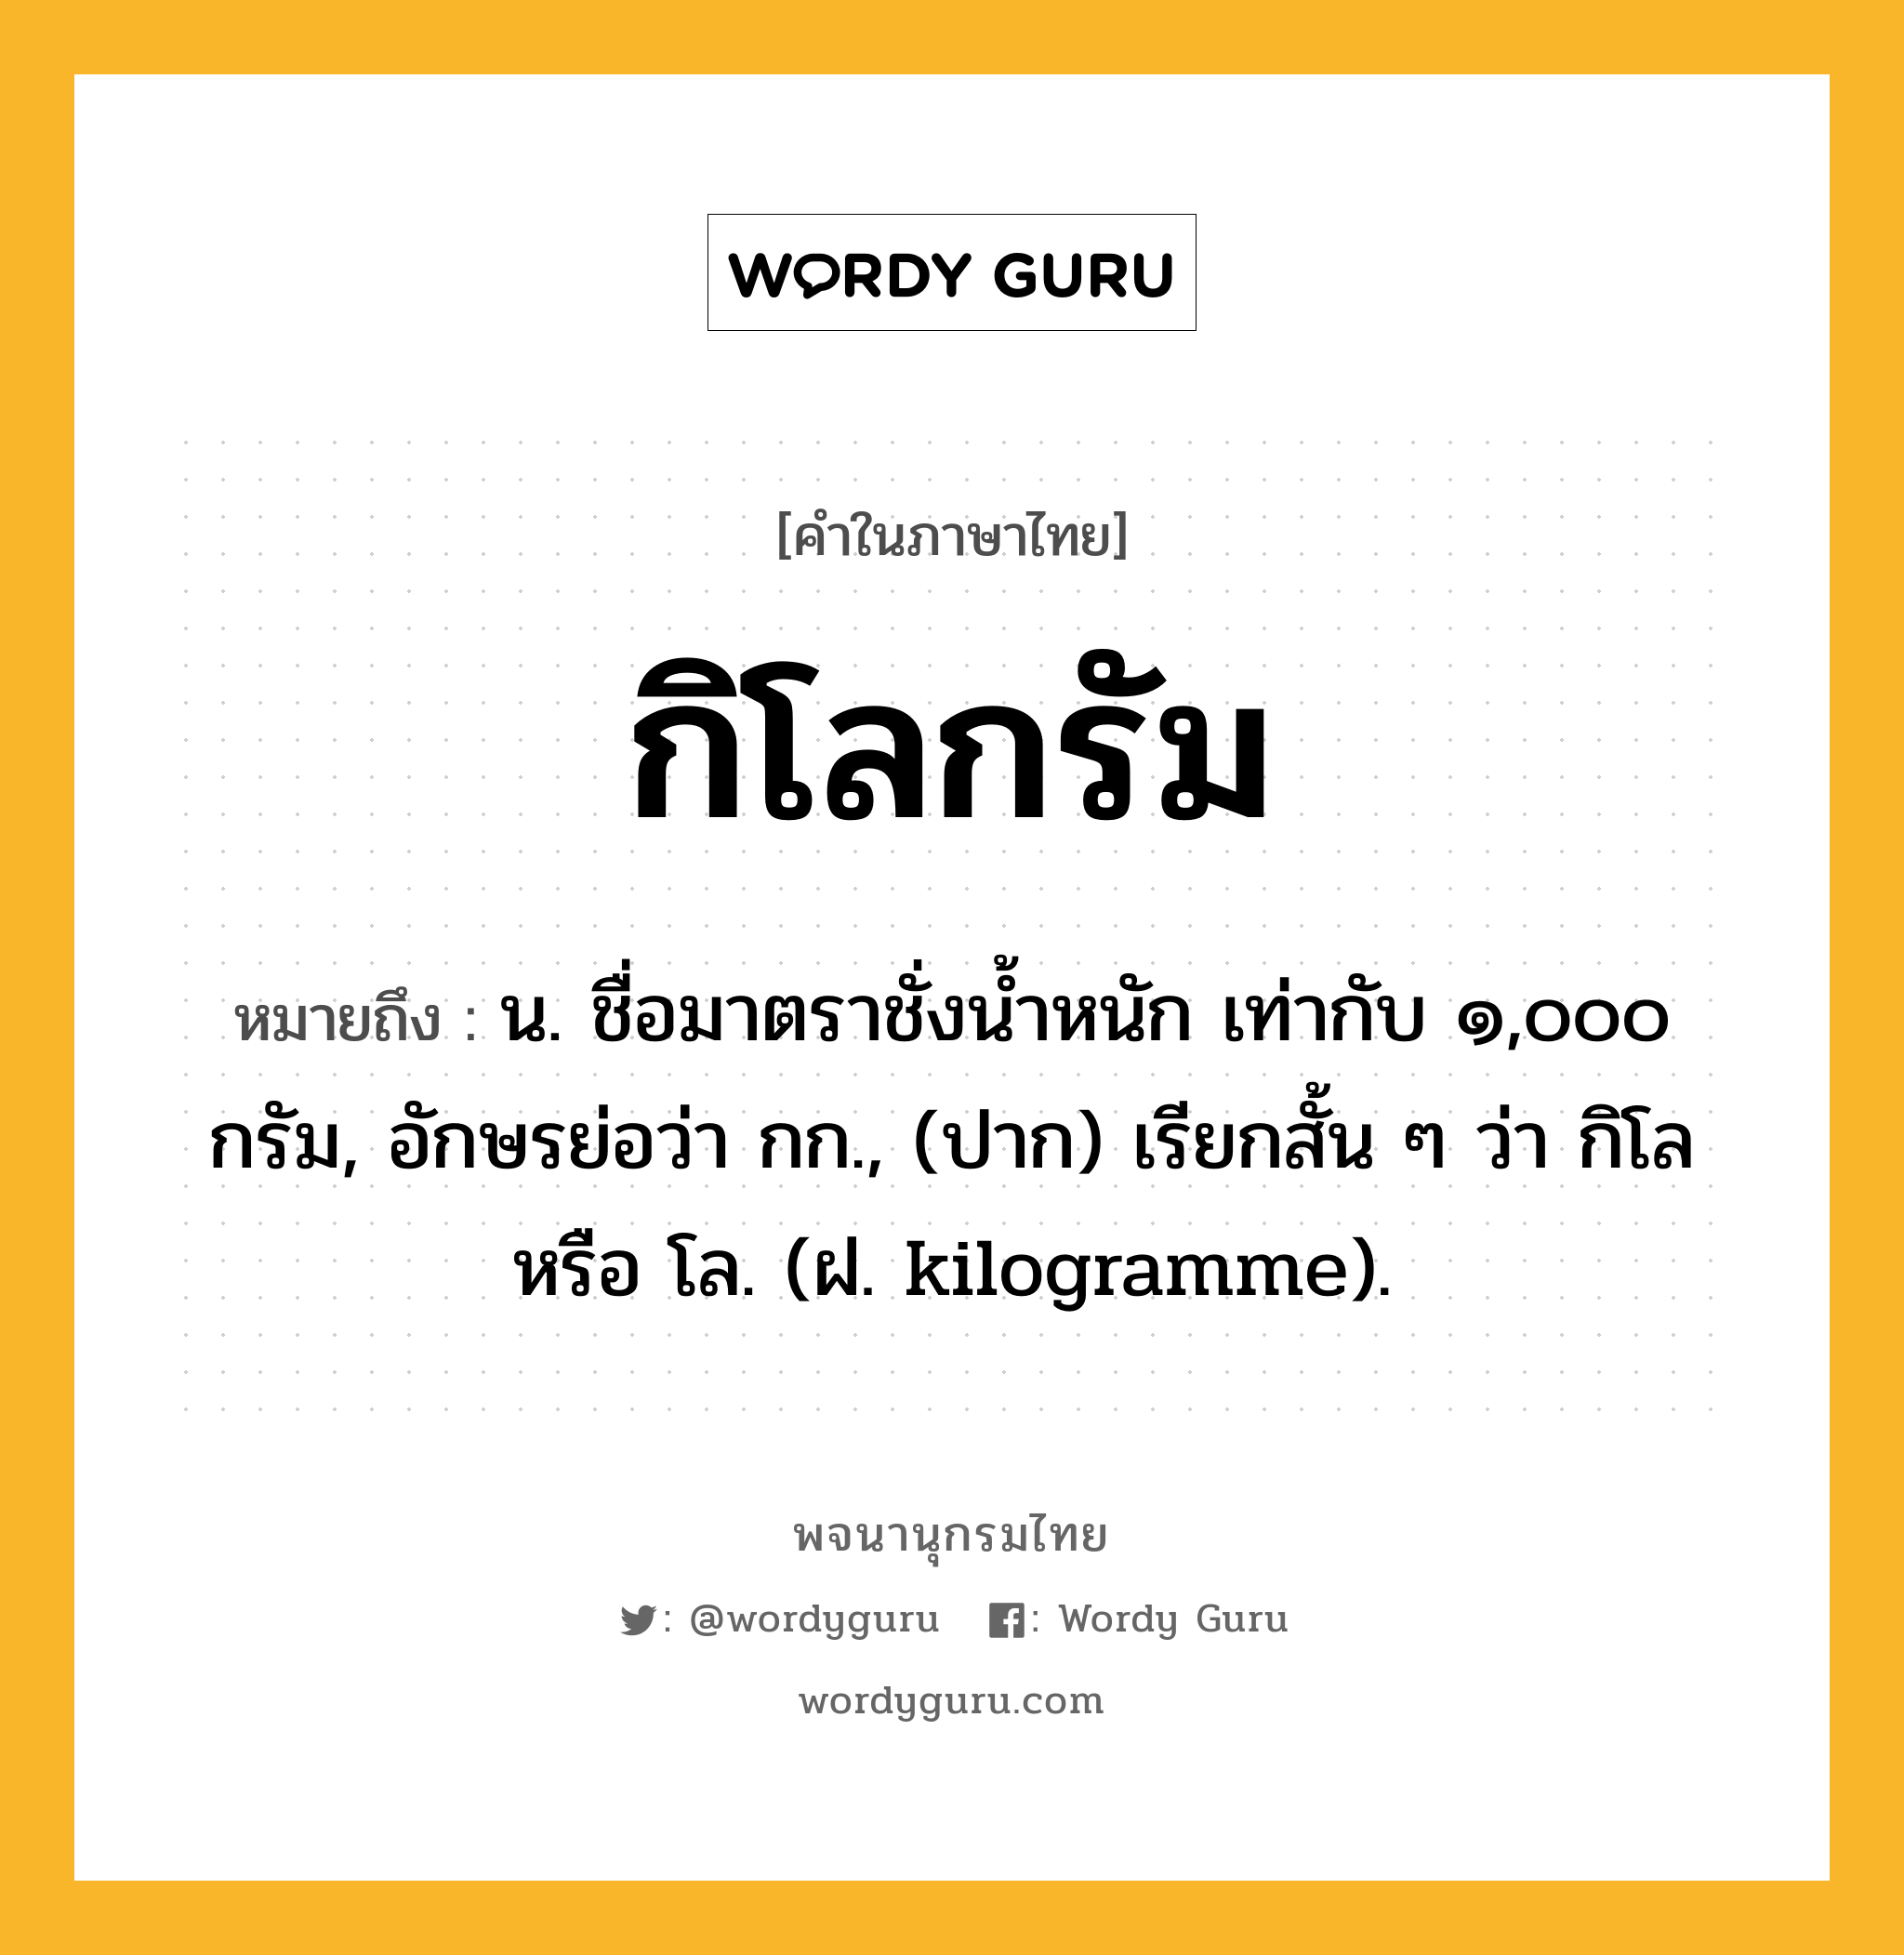 กิโลกรัม ความหมาย หมายถึงอะไร?, คำในภาษาไทย กิโลกรัม หมายถึง น. ชื่อมาตราชั่งนํ้าหนัก เท่ากับ ๑,๐๐๐ กรัม, อักษรย่อว่า กก., (ปาก) เรียกสั้น ๆ ว่า กิโล หรือ โล. (ฝ. kilogramme).